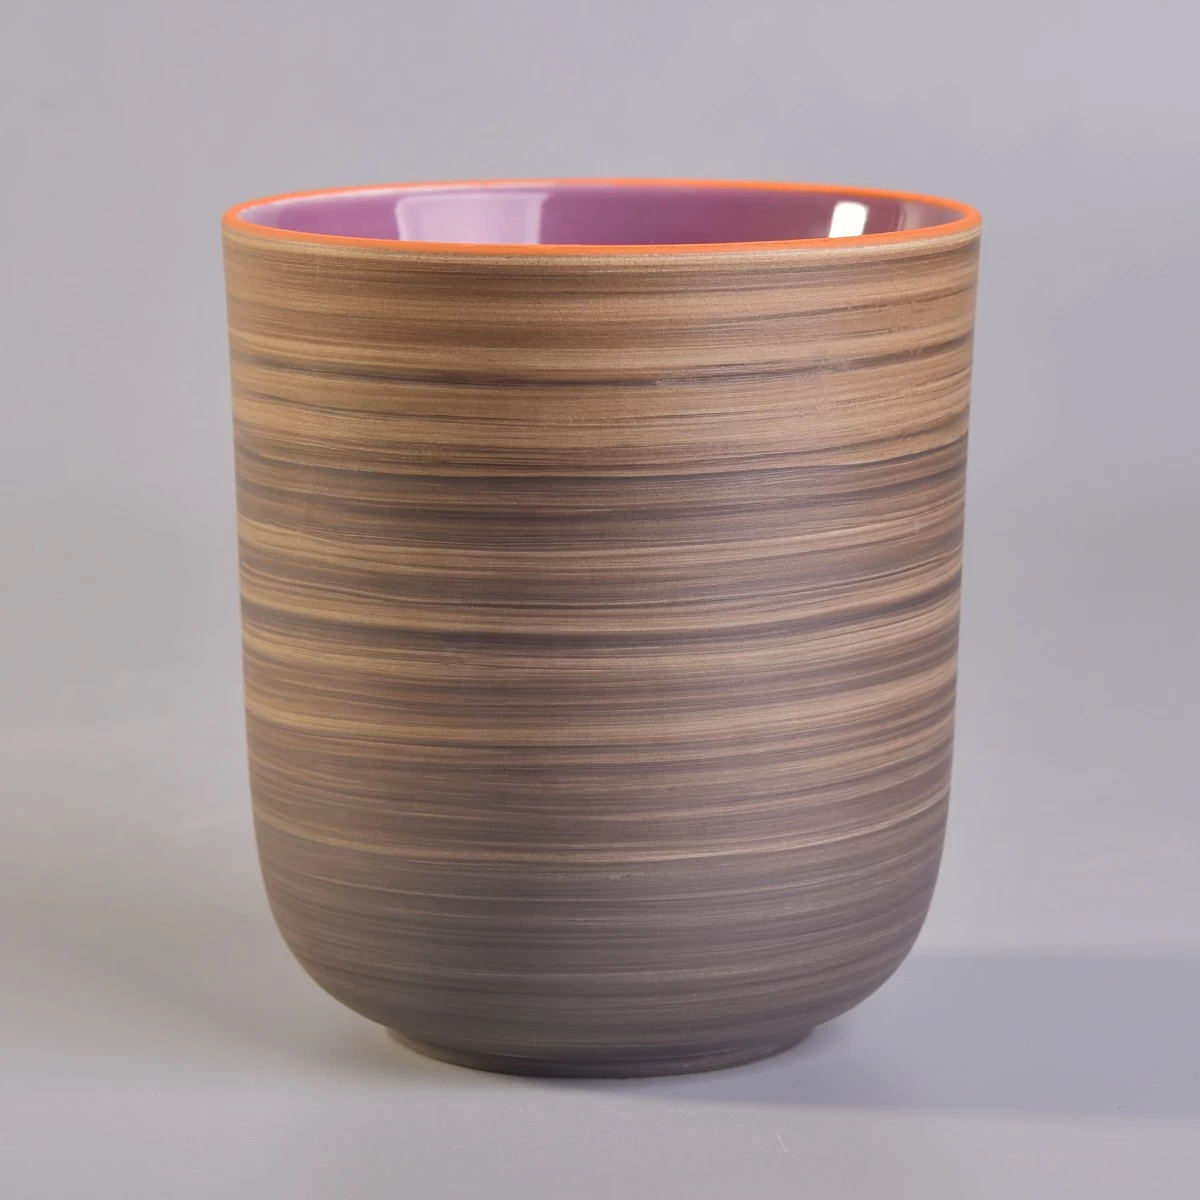 400ml Vintage cylinder ceramic handmade candle holder jars